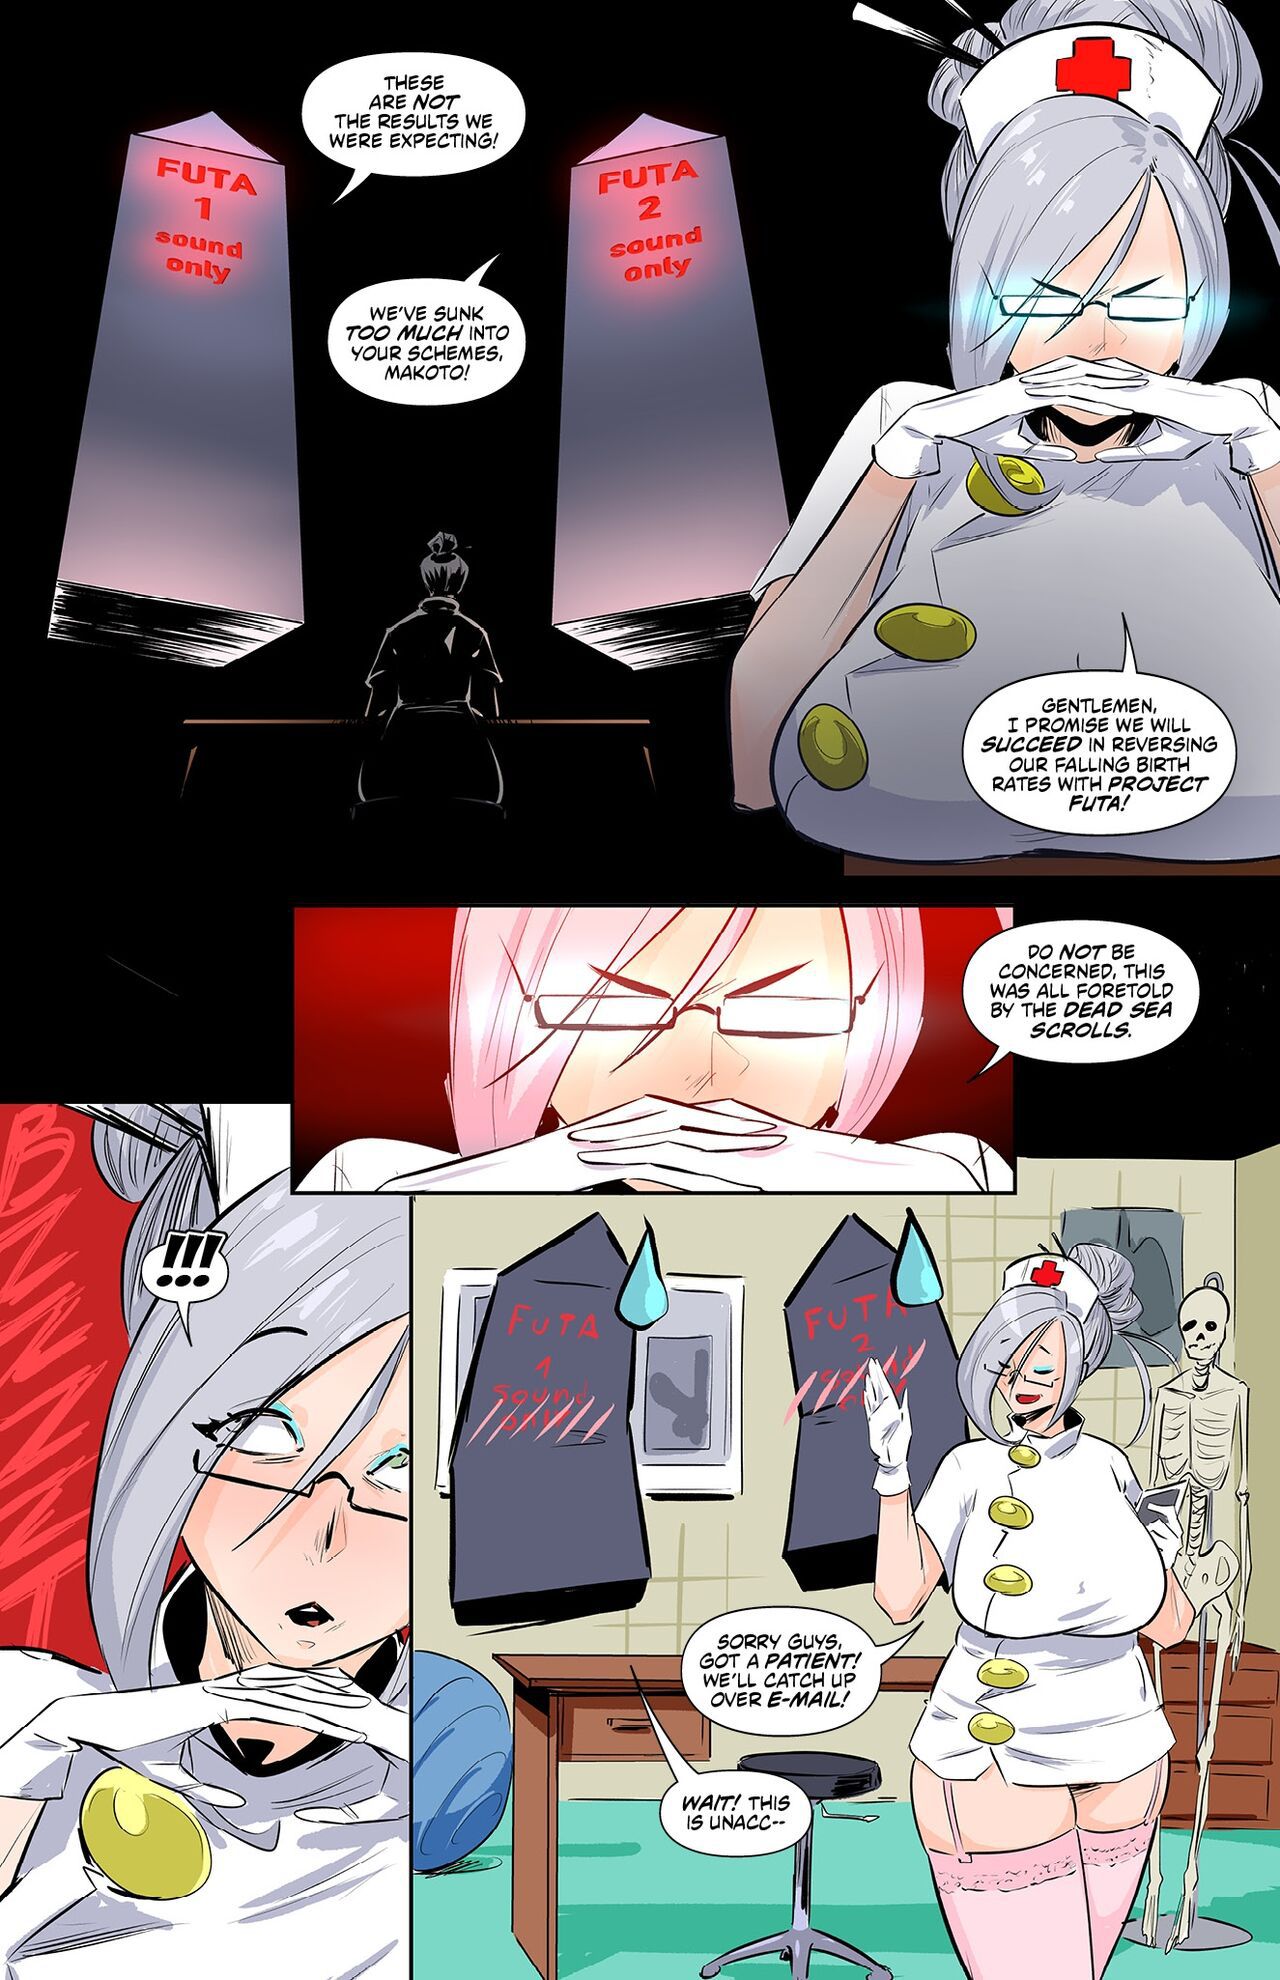 [Worky Zark] Monster Girl Academy Issue 8 3